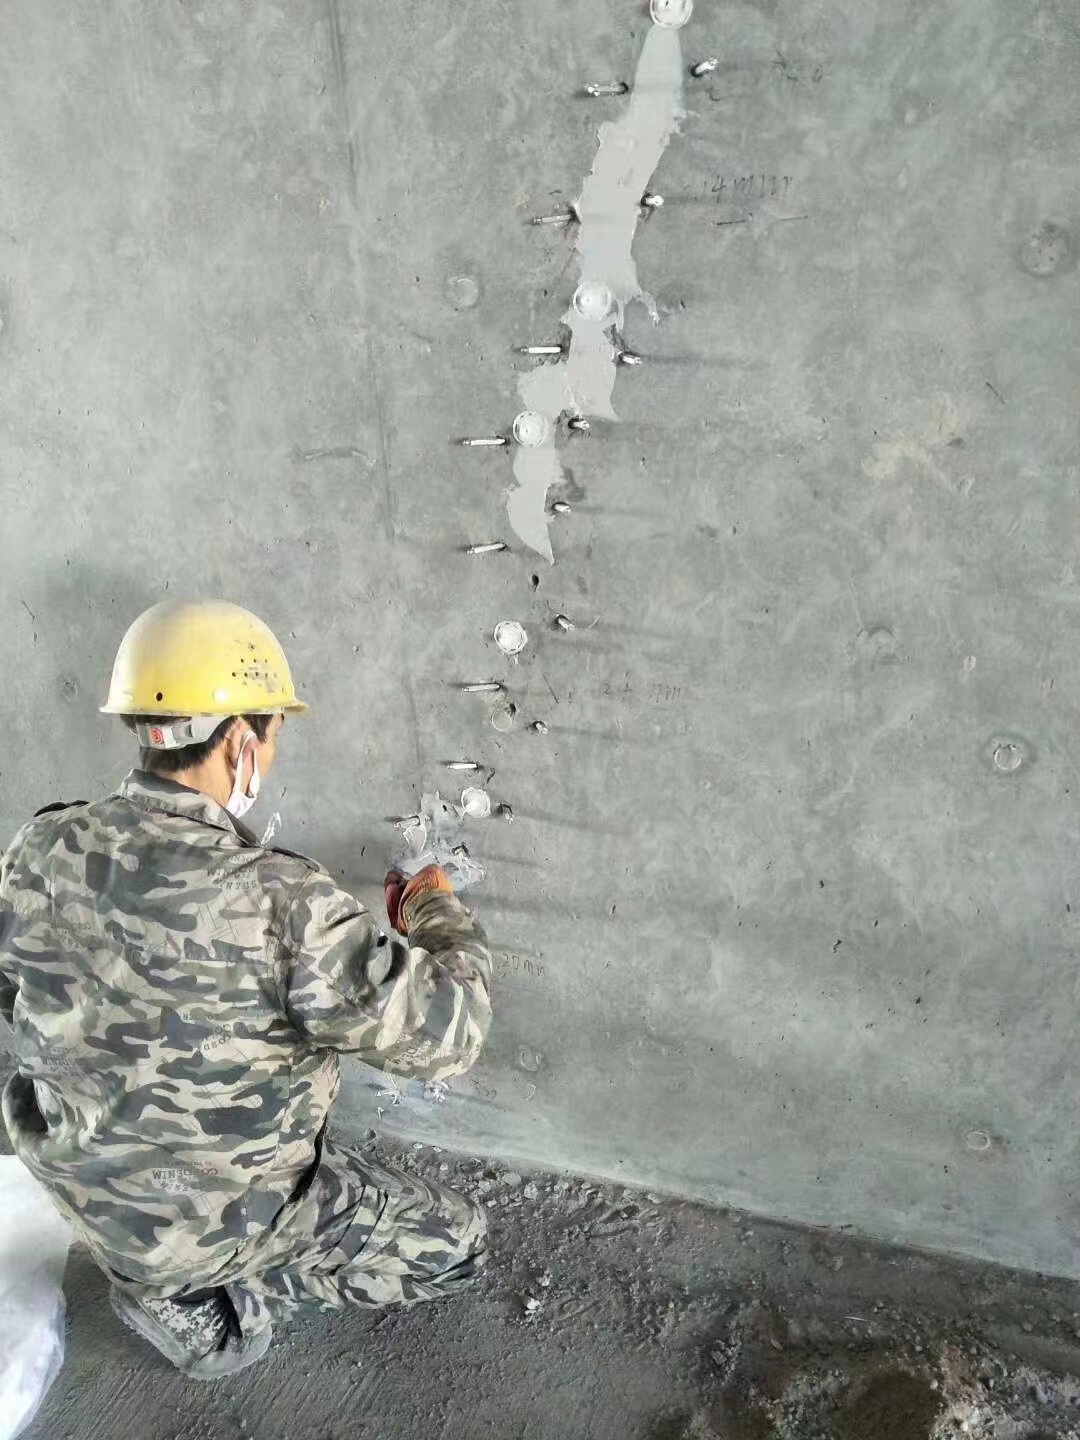 福州混凝土楼板裂缝加固施工的方案